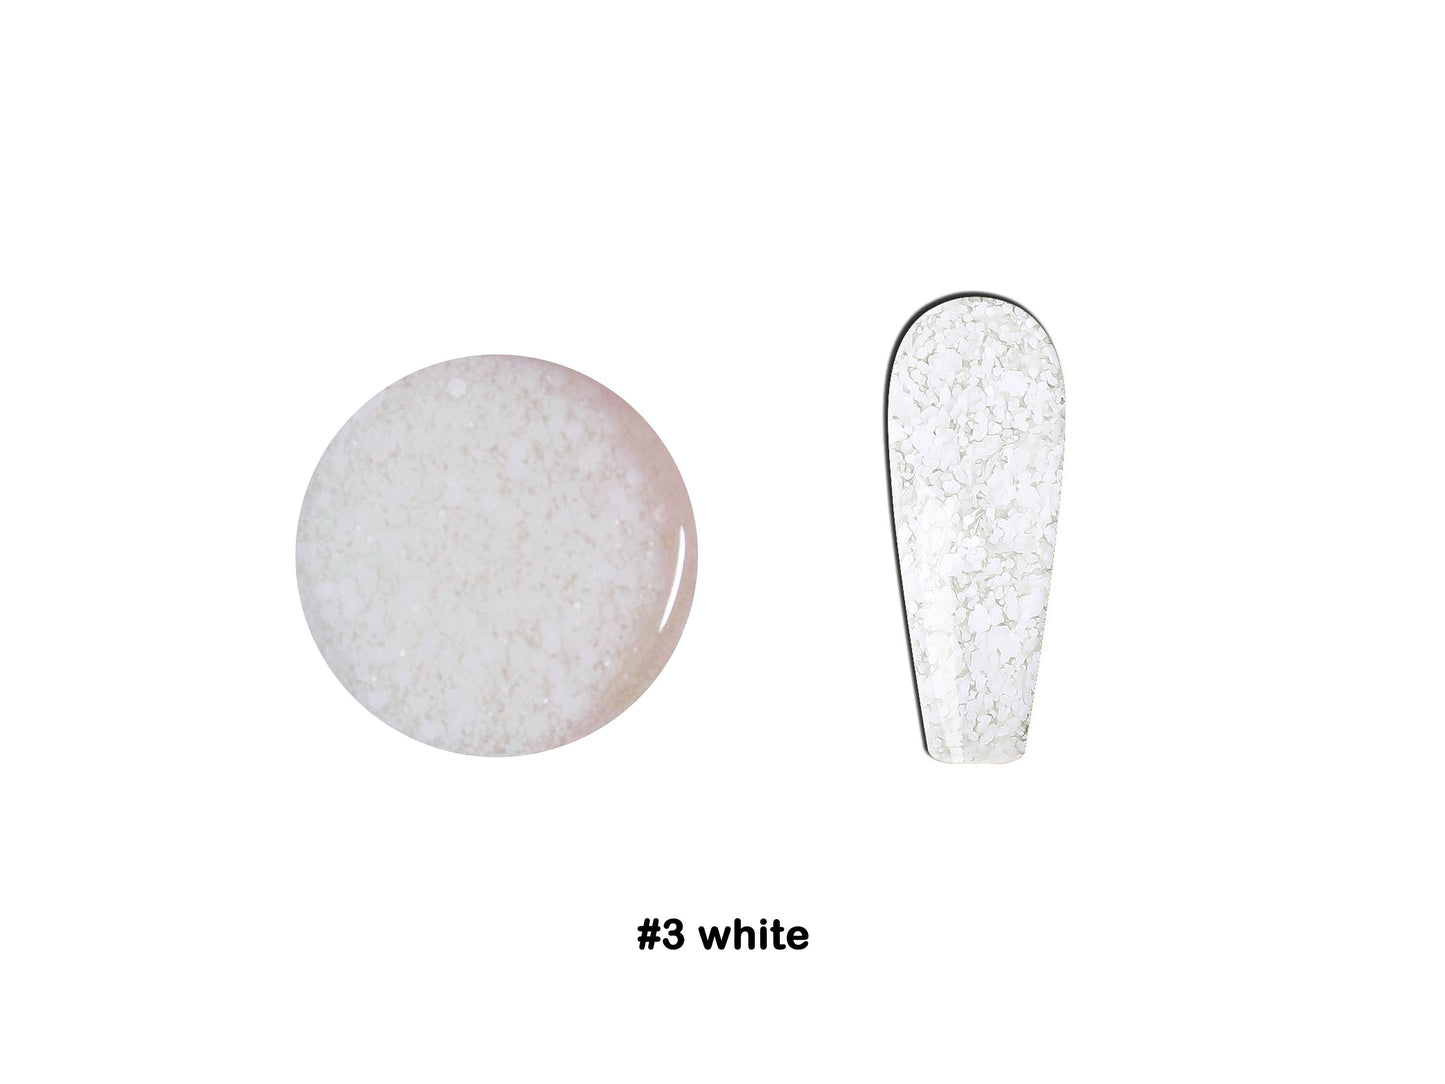 5g Snow Flake Glitter Nail UV Gel Polish/ White Snowflakes Glitters Gels Nail Polish Winter Manicure Pedicure Soak off Supply